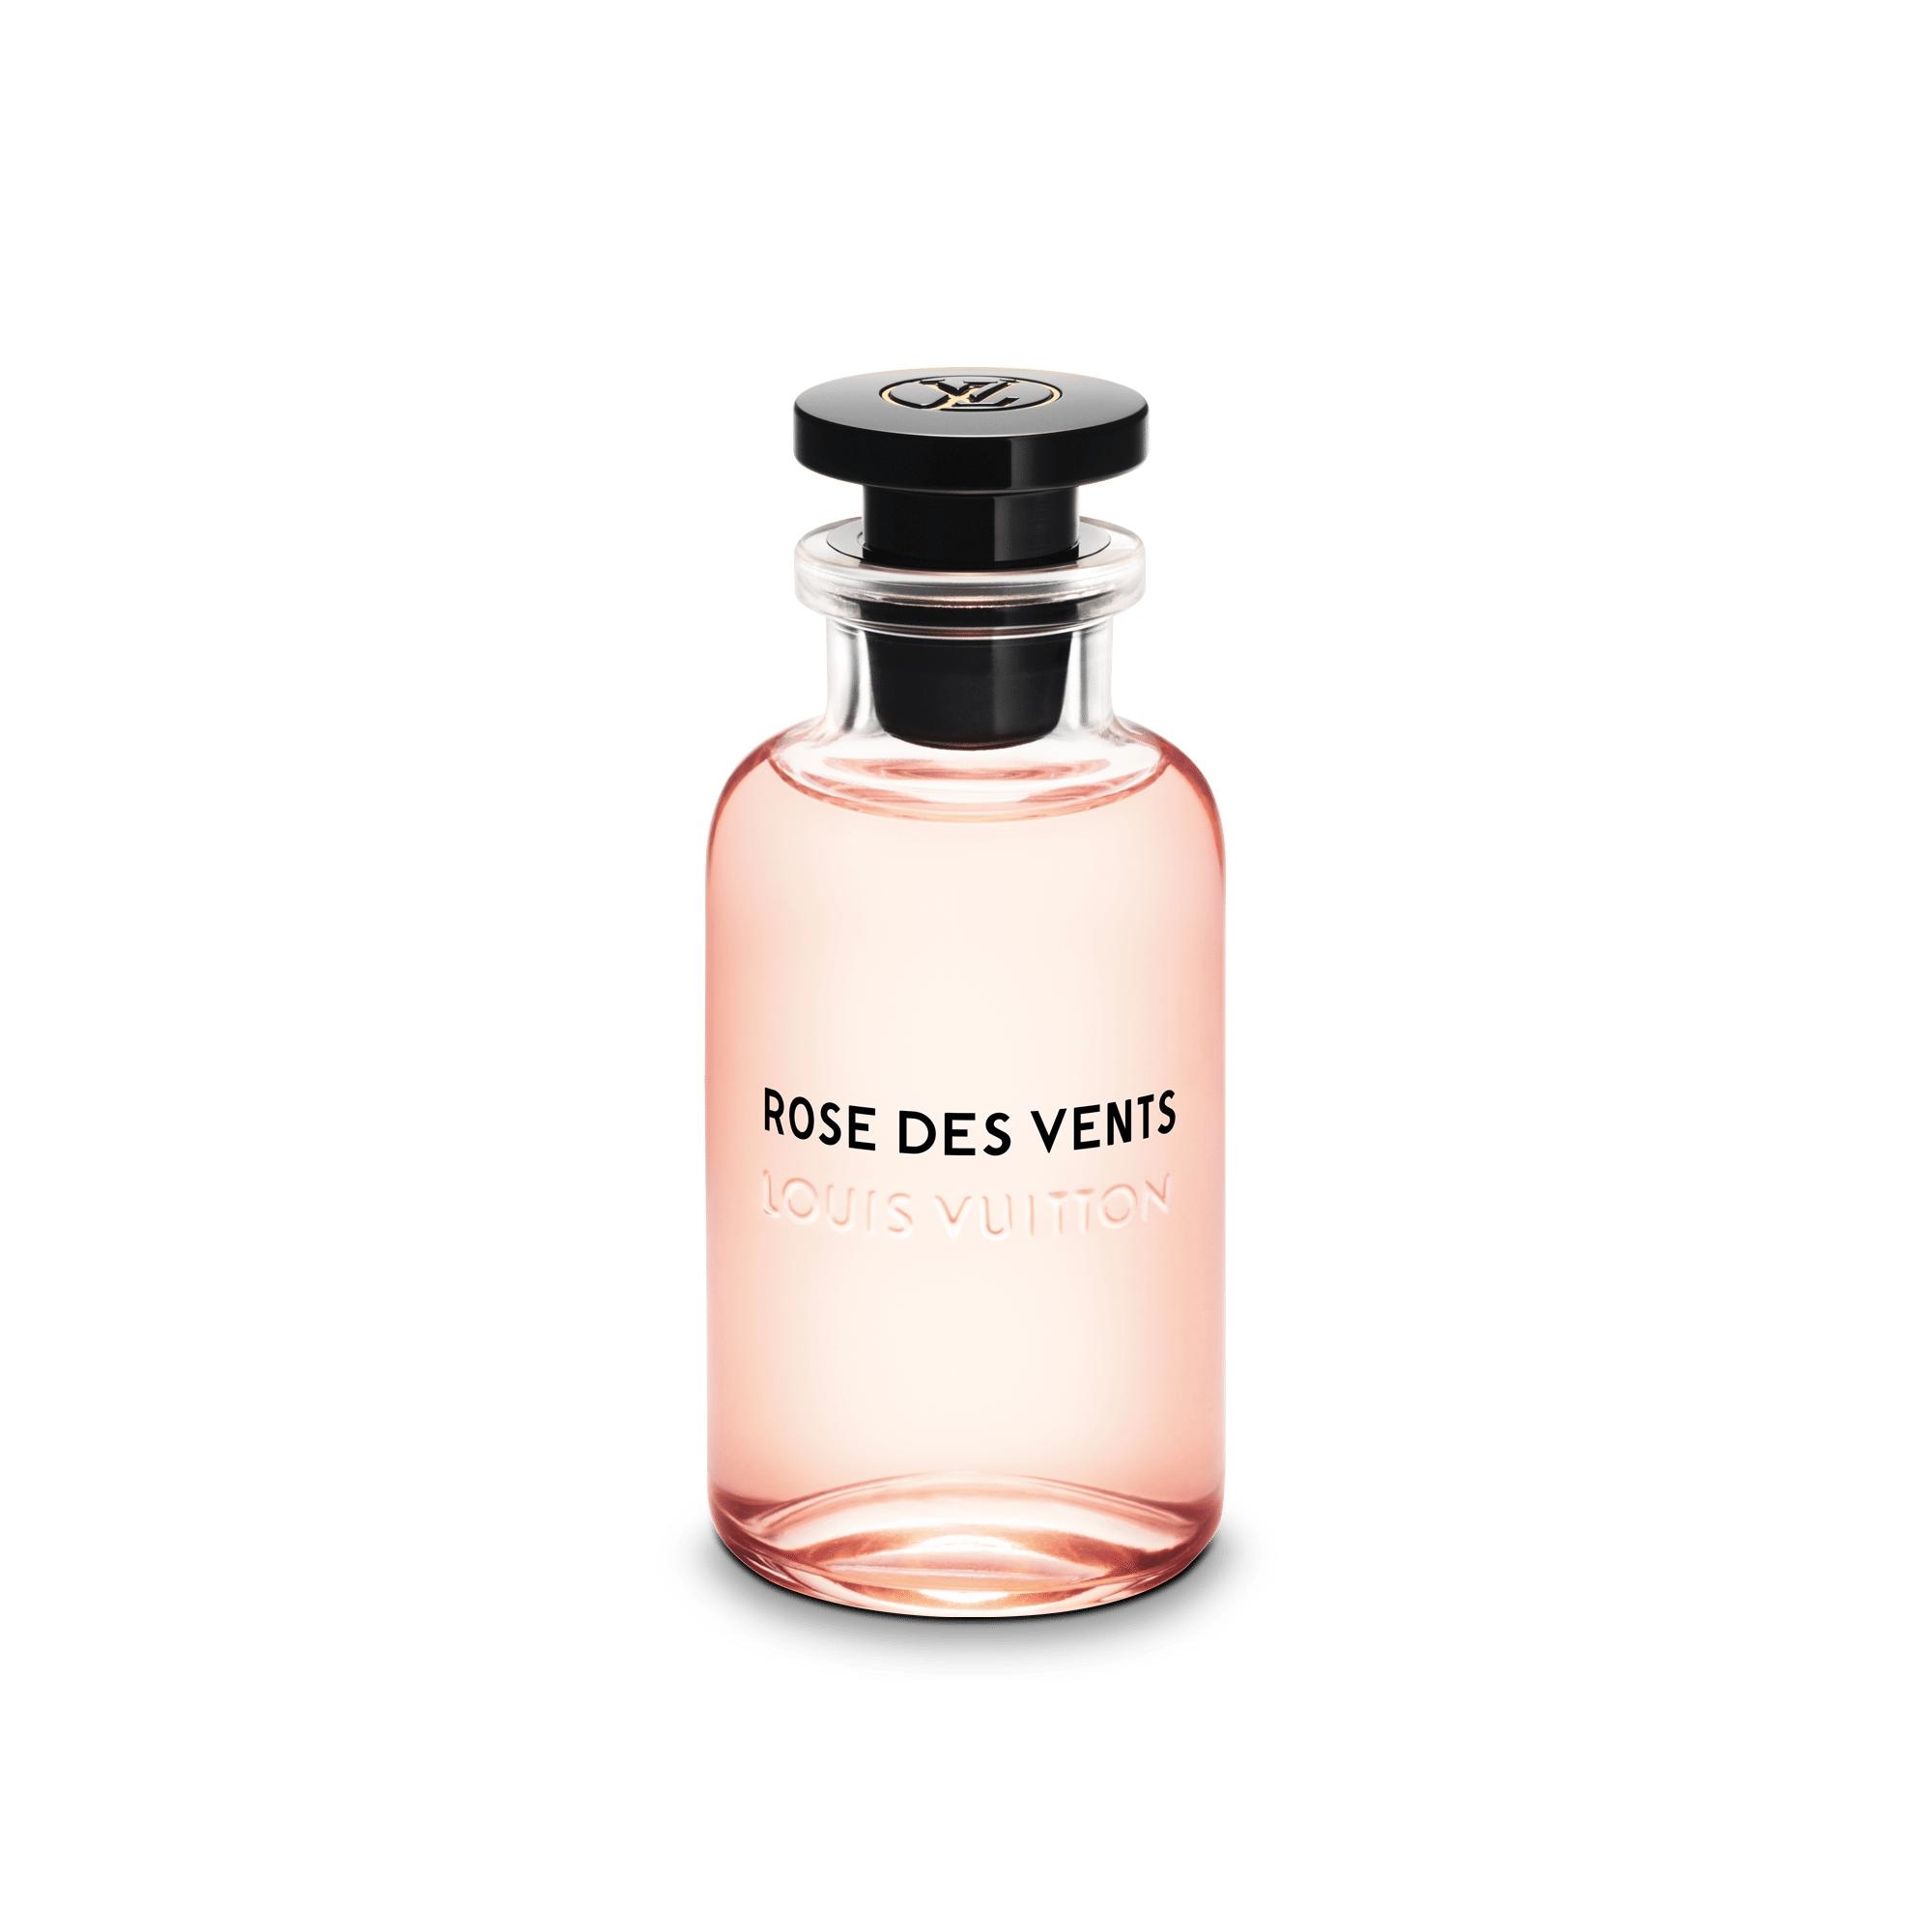 Chi tiết 76+ về louis vuitton perfume rose des vents